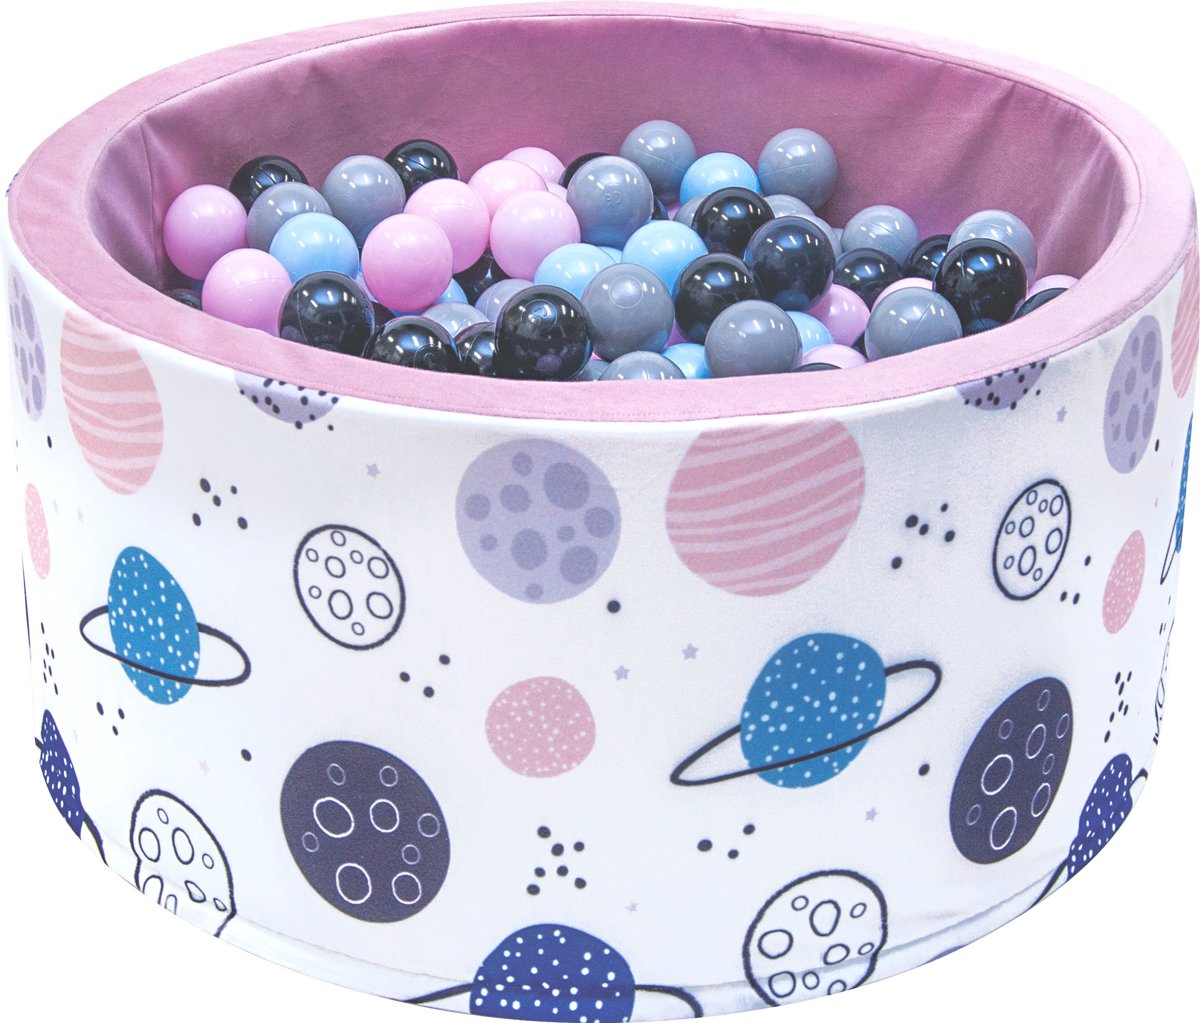 Ballenbak - stevige ballenbad -90 x 40 cm - 200 ballen Ø 7 cm - roze, wit, grijs en lichtblauw